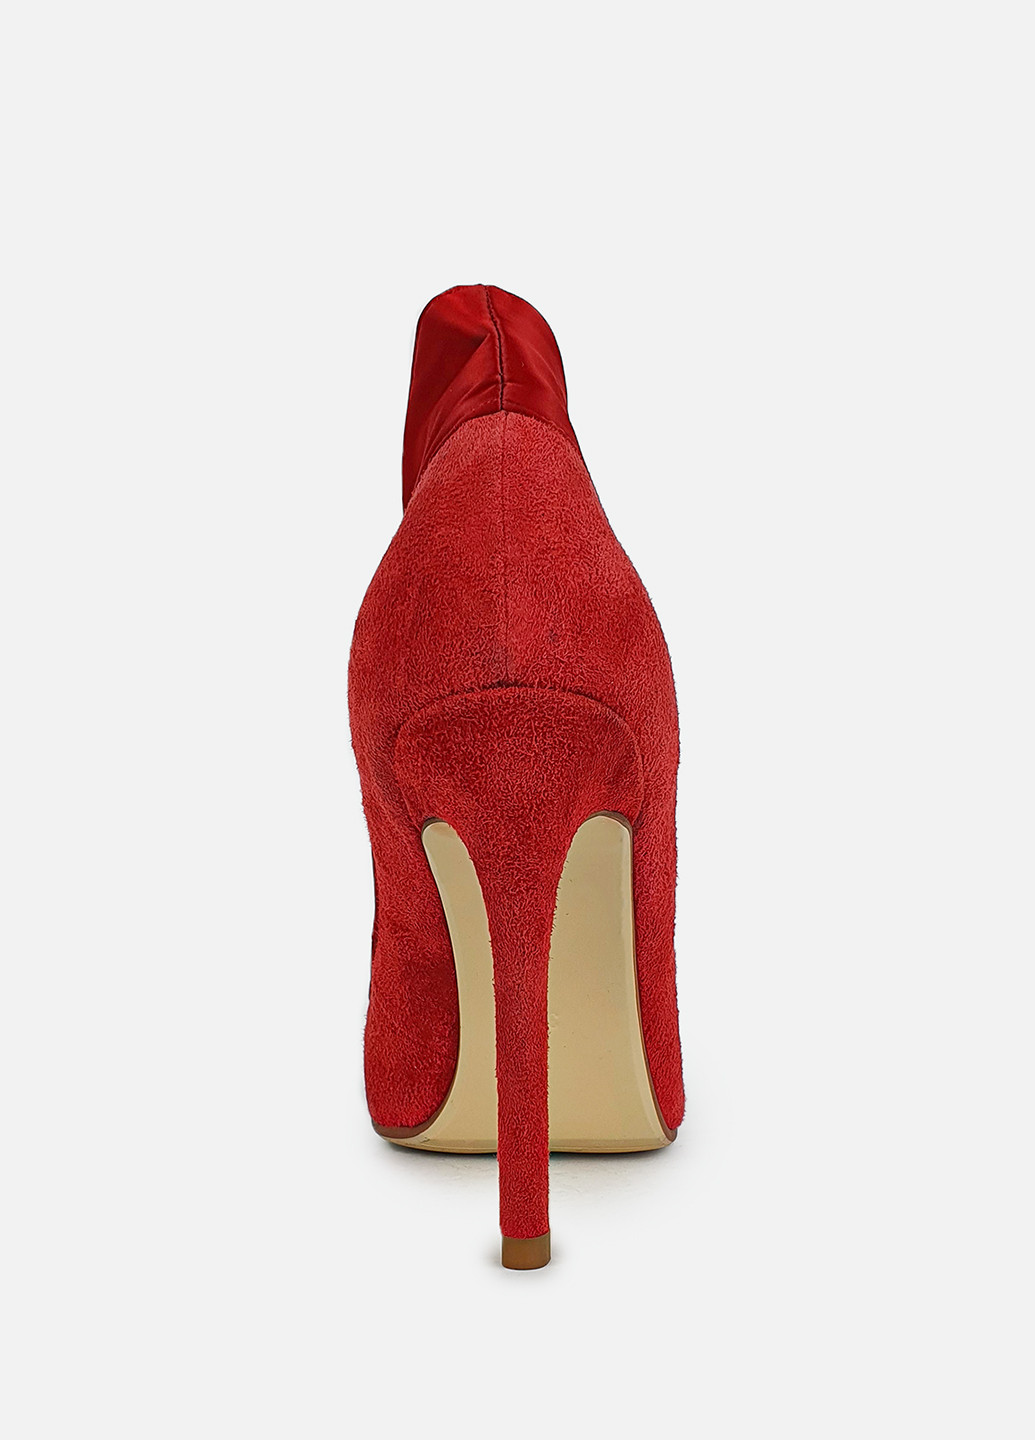 Туфли красные женские на высокой шпильке замшевые Glossi